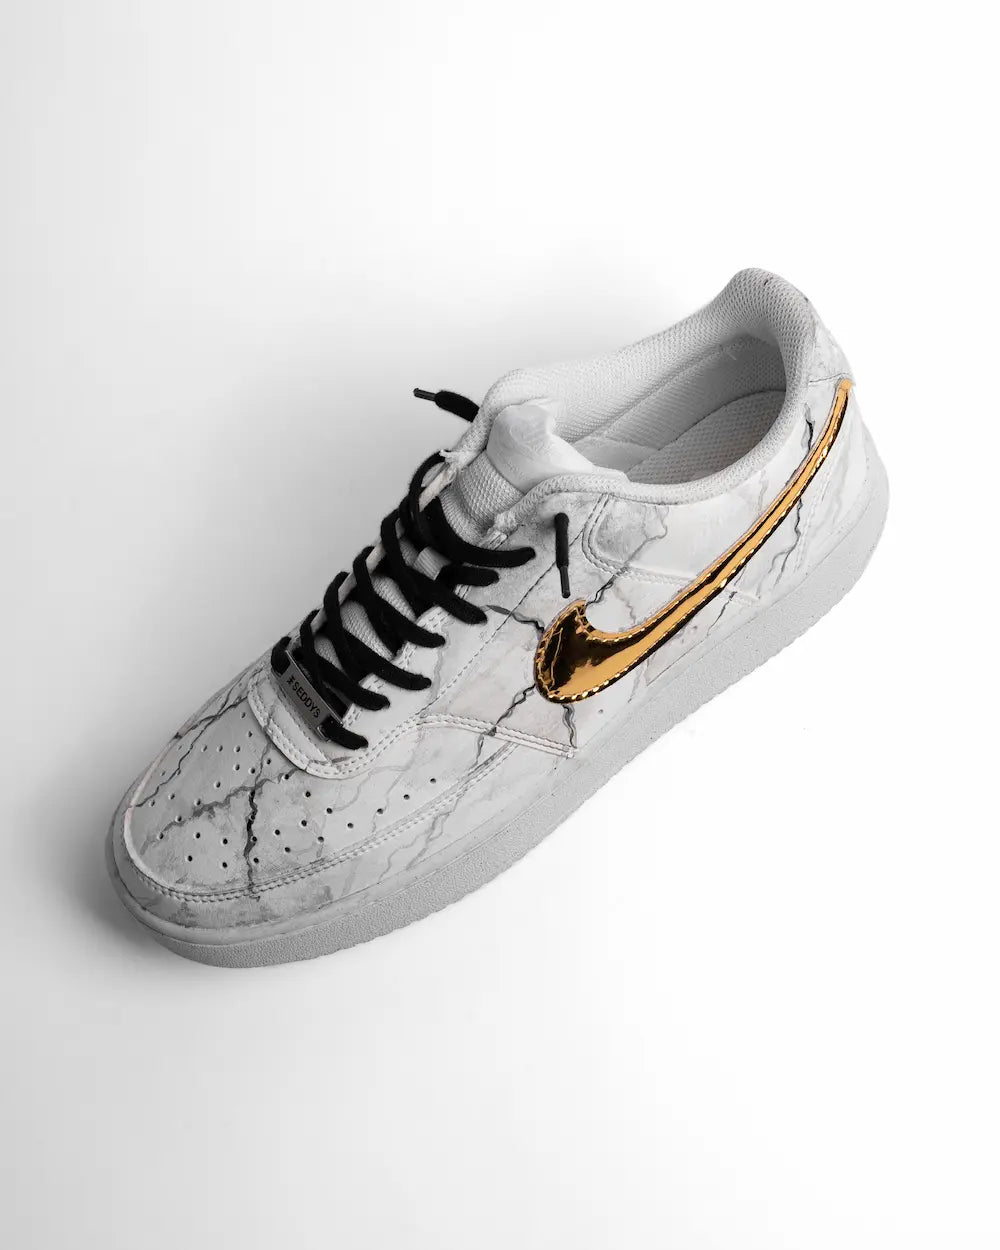 Nike Court Vision sneaker custom effetto marmo dipinto a mano, con tessuto metallizzato dorato